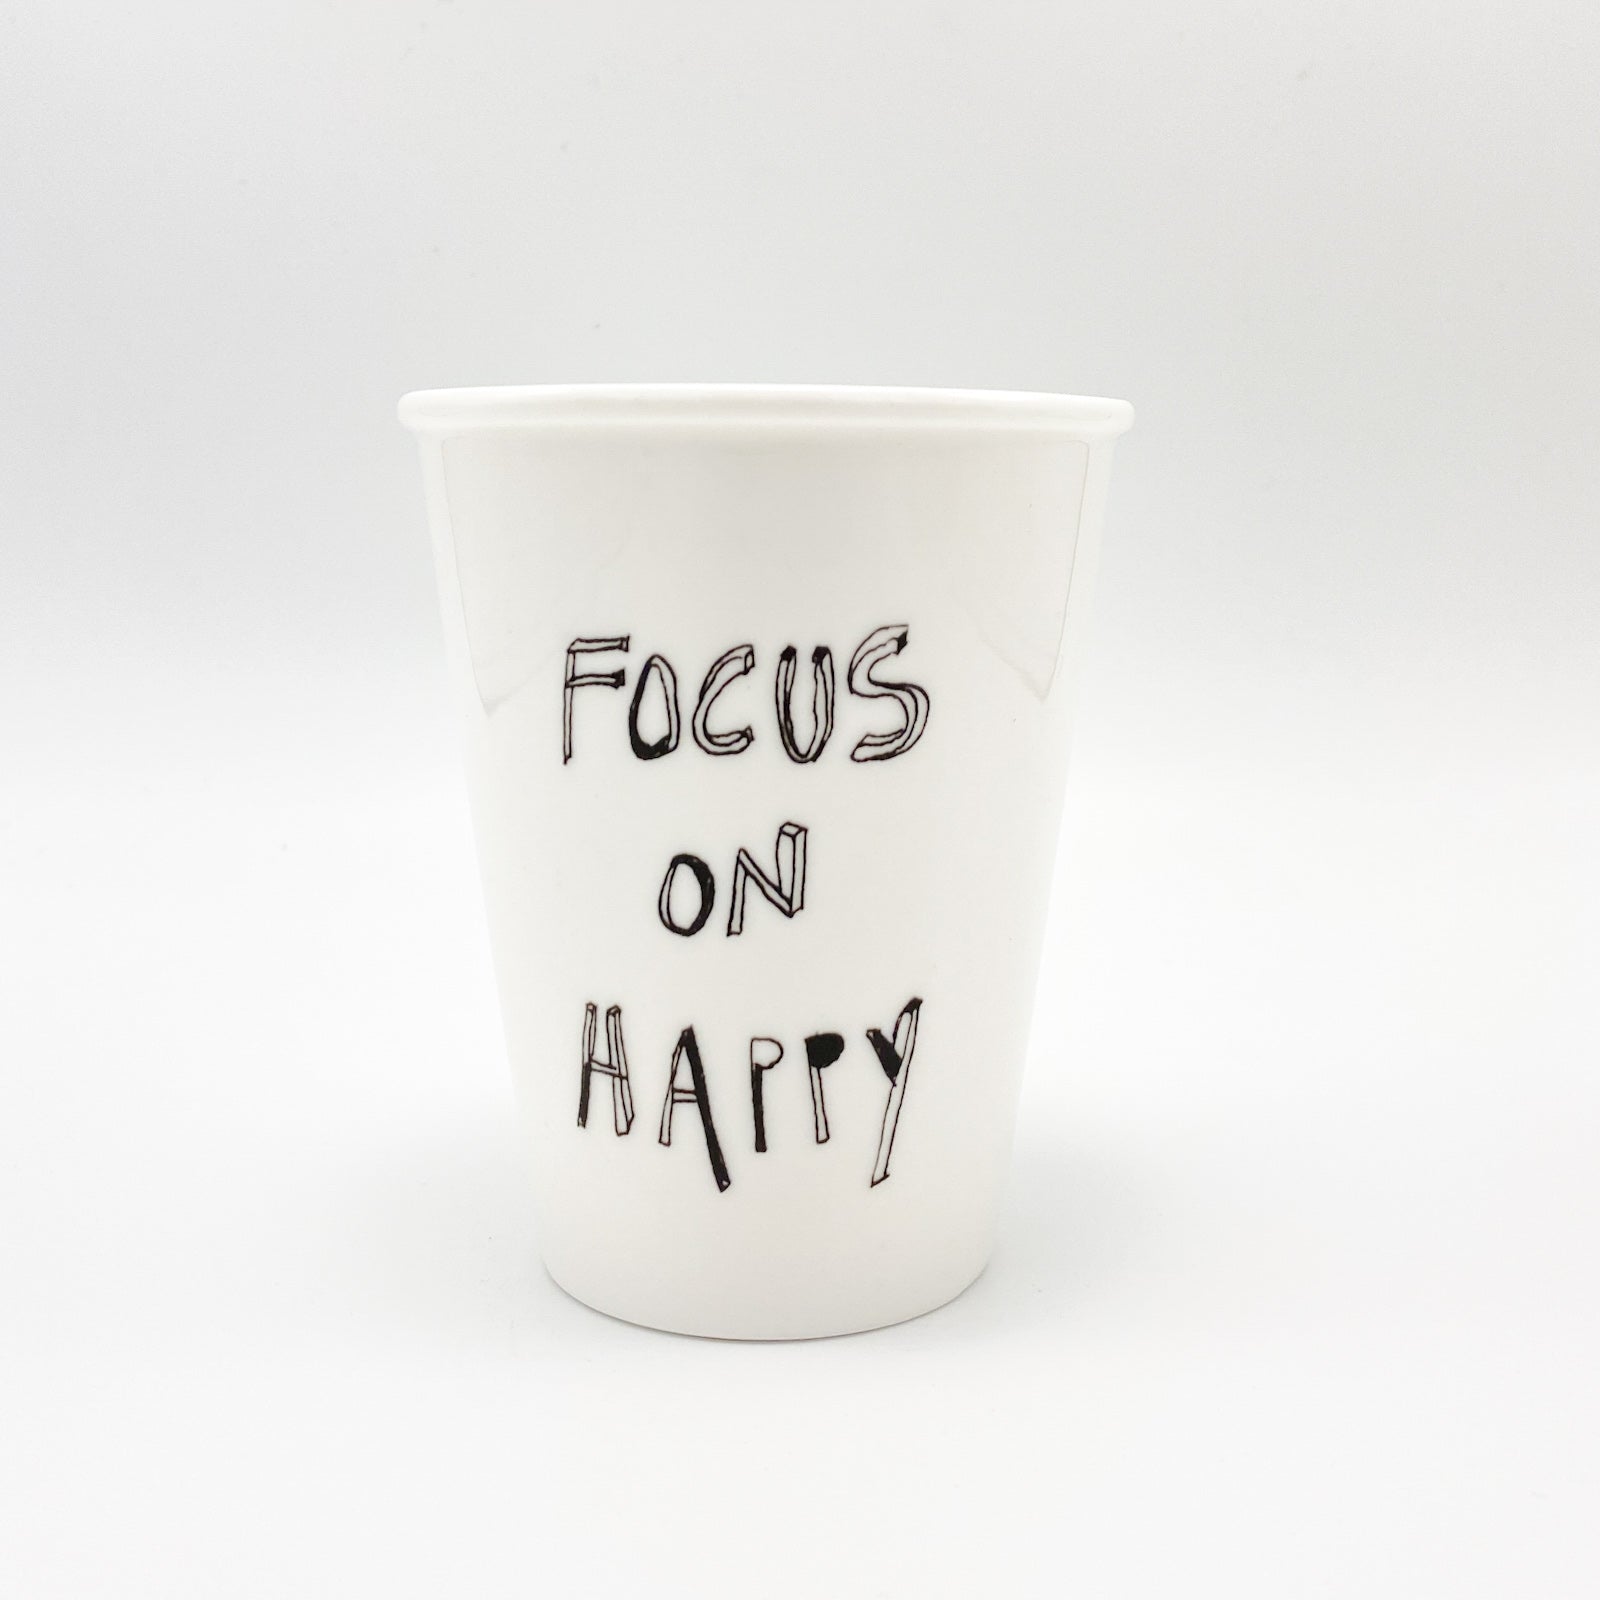 cup "focus on happy" - helen b